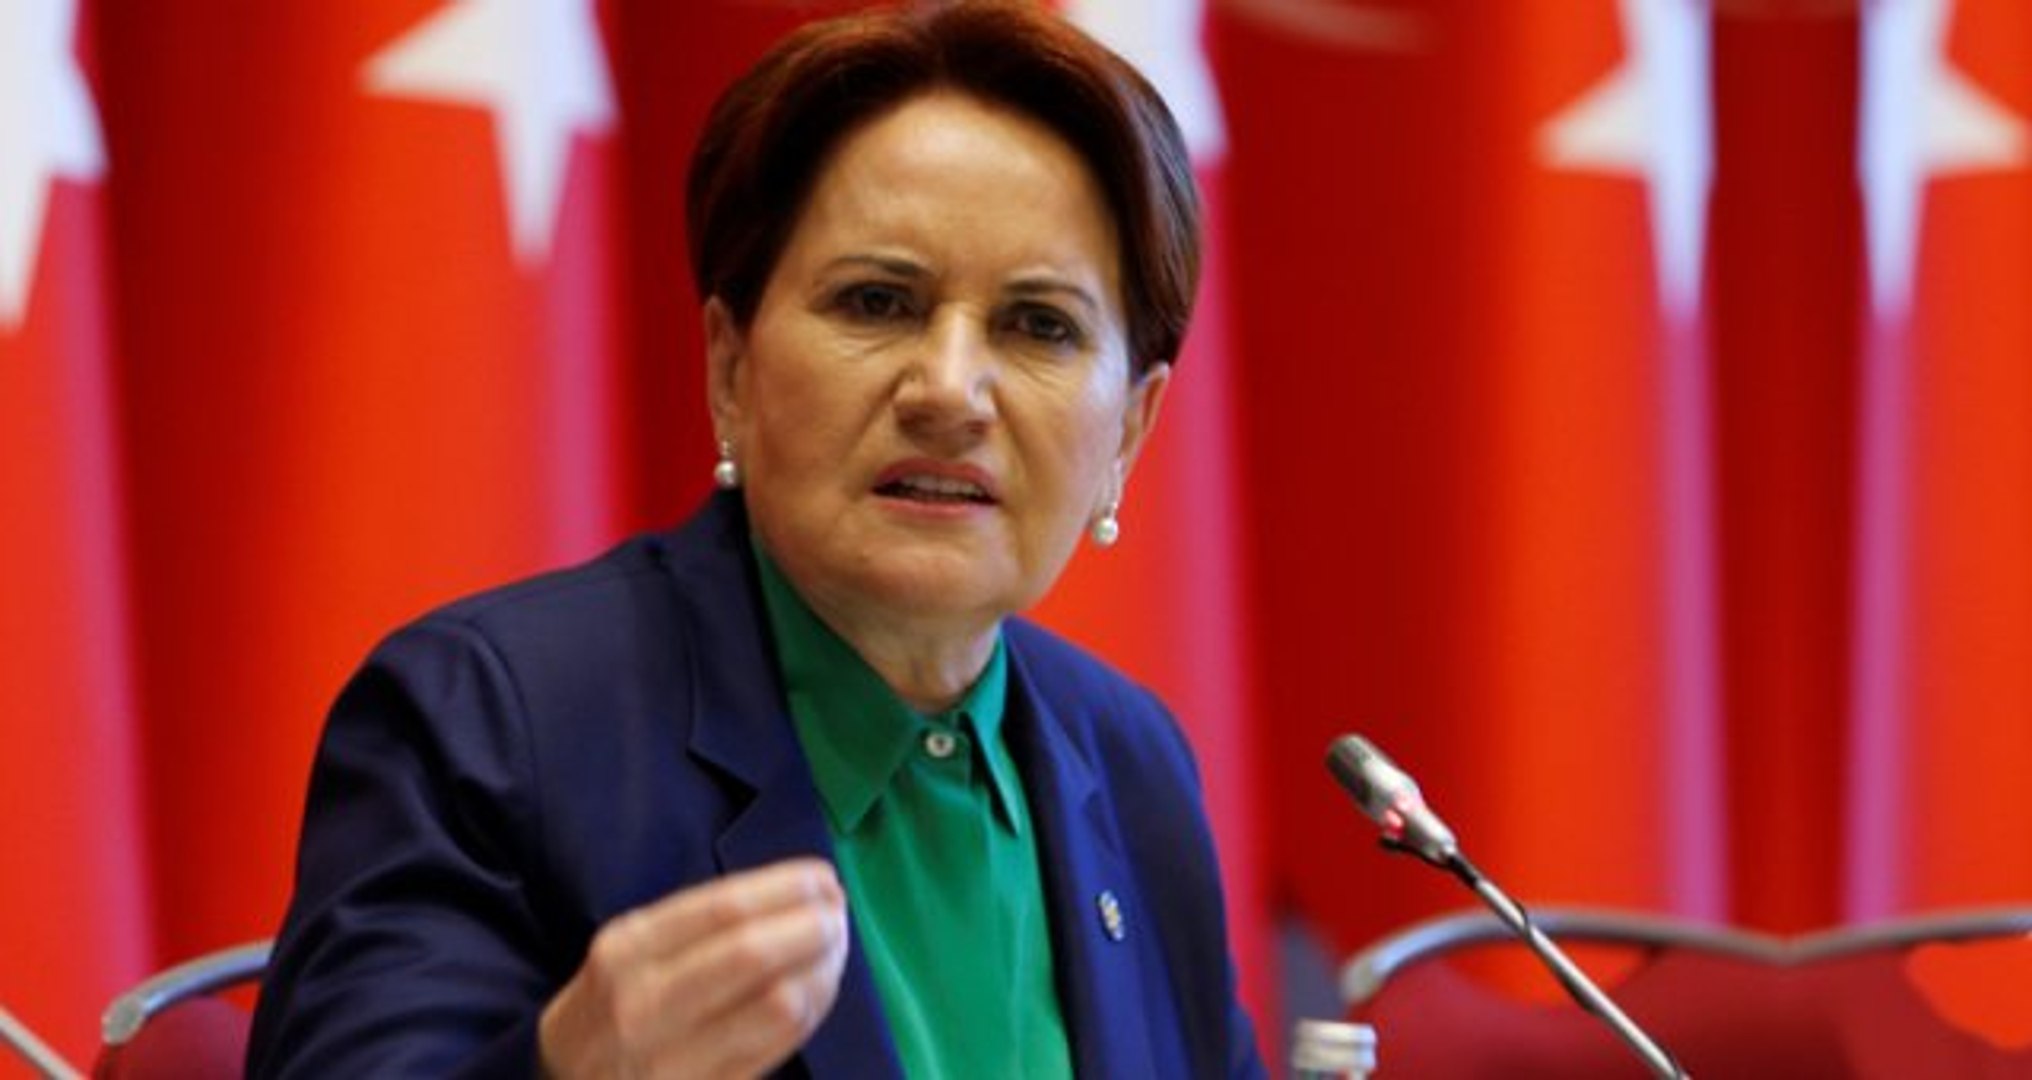 İYİ Parti Genel Başkanı Meral Akşener, Iğdır'da Cumhur İttifakı'nın  Adayının Destekleneceğini Açıkladı - Dailymotion Video